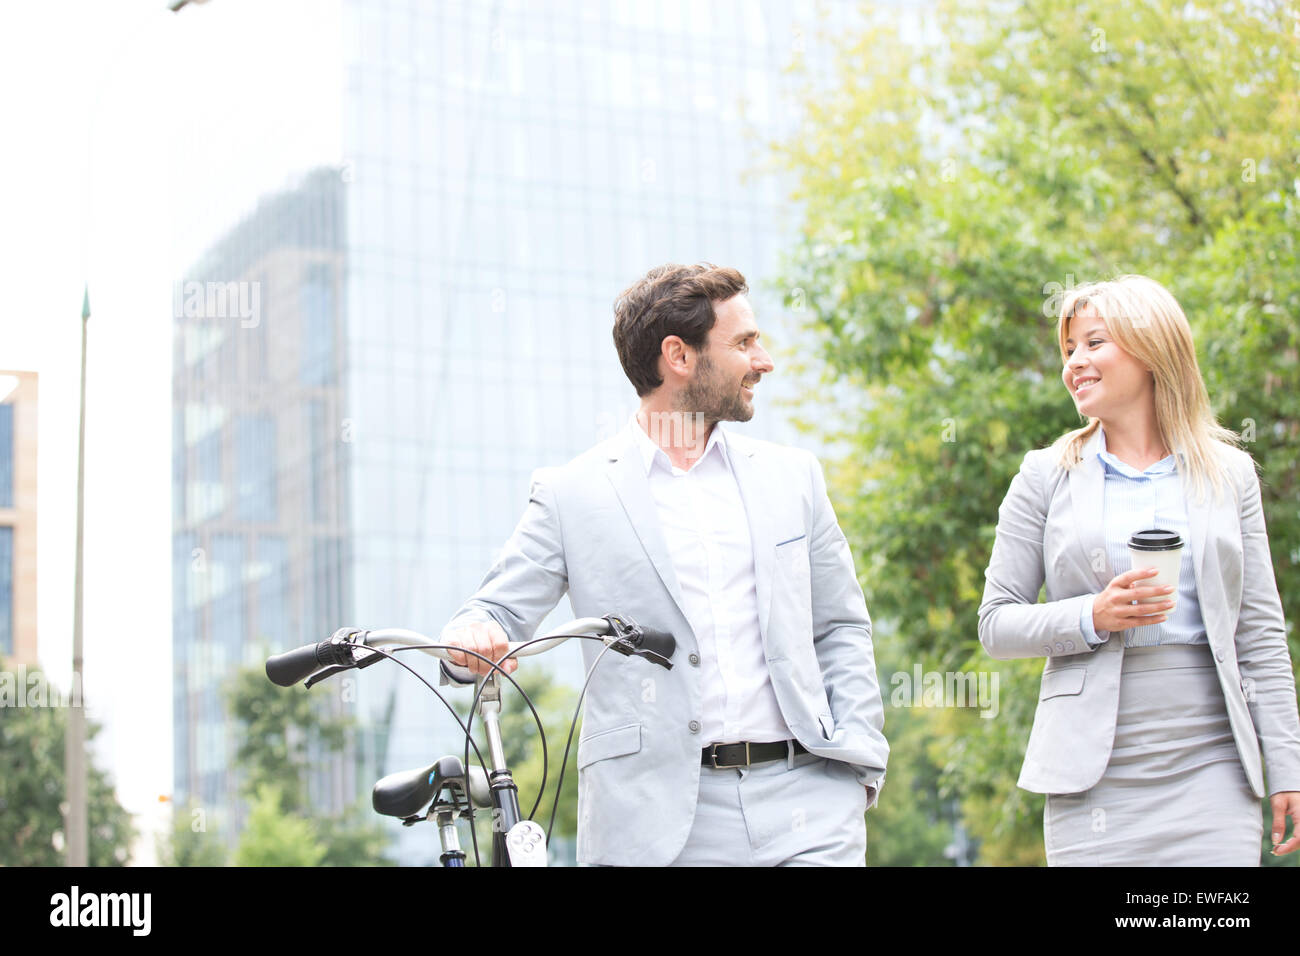 Empresarios con bicicleta y copa desechable conversando mientras camina al aire libre Foto de stock